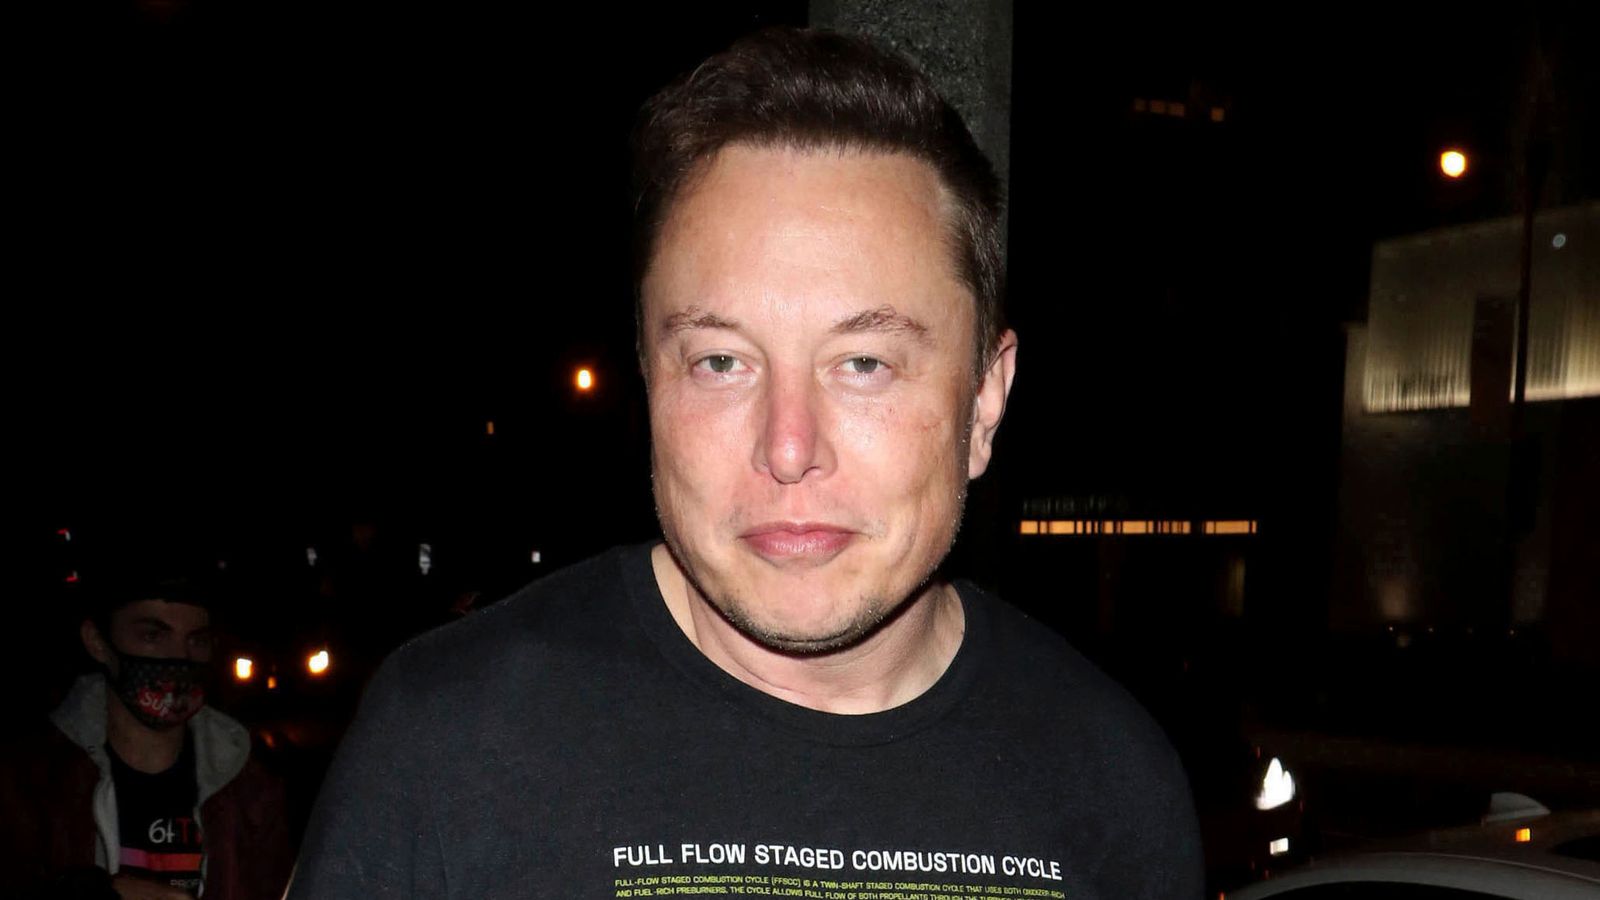 Elon Musk dit aux employés de Tesla de retourner au bureau ou de quitter l’entreprise, selon une note de service divulguée |  Actualités scientifiques et techniques